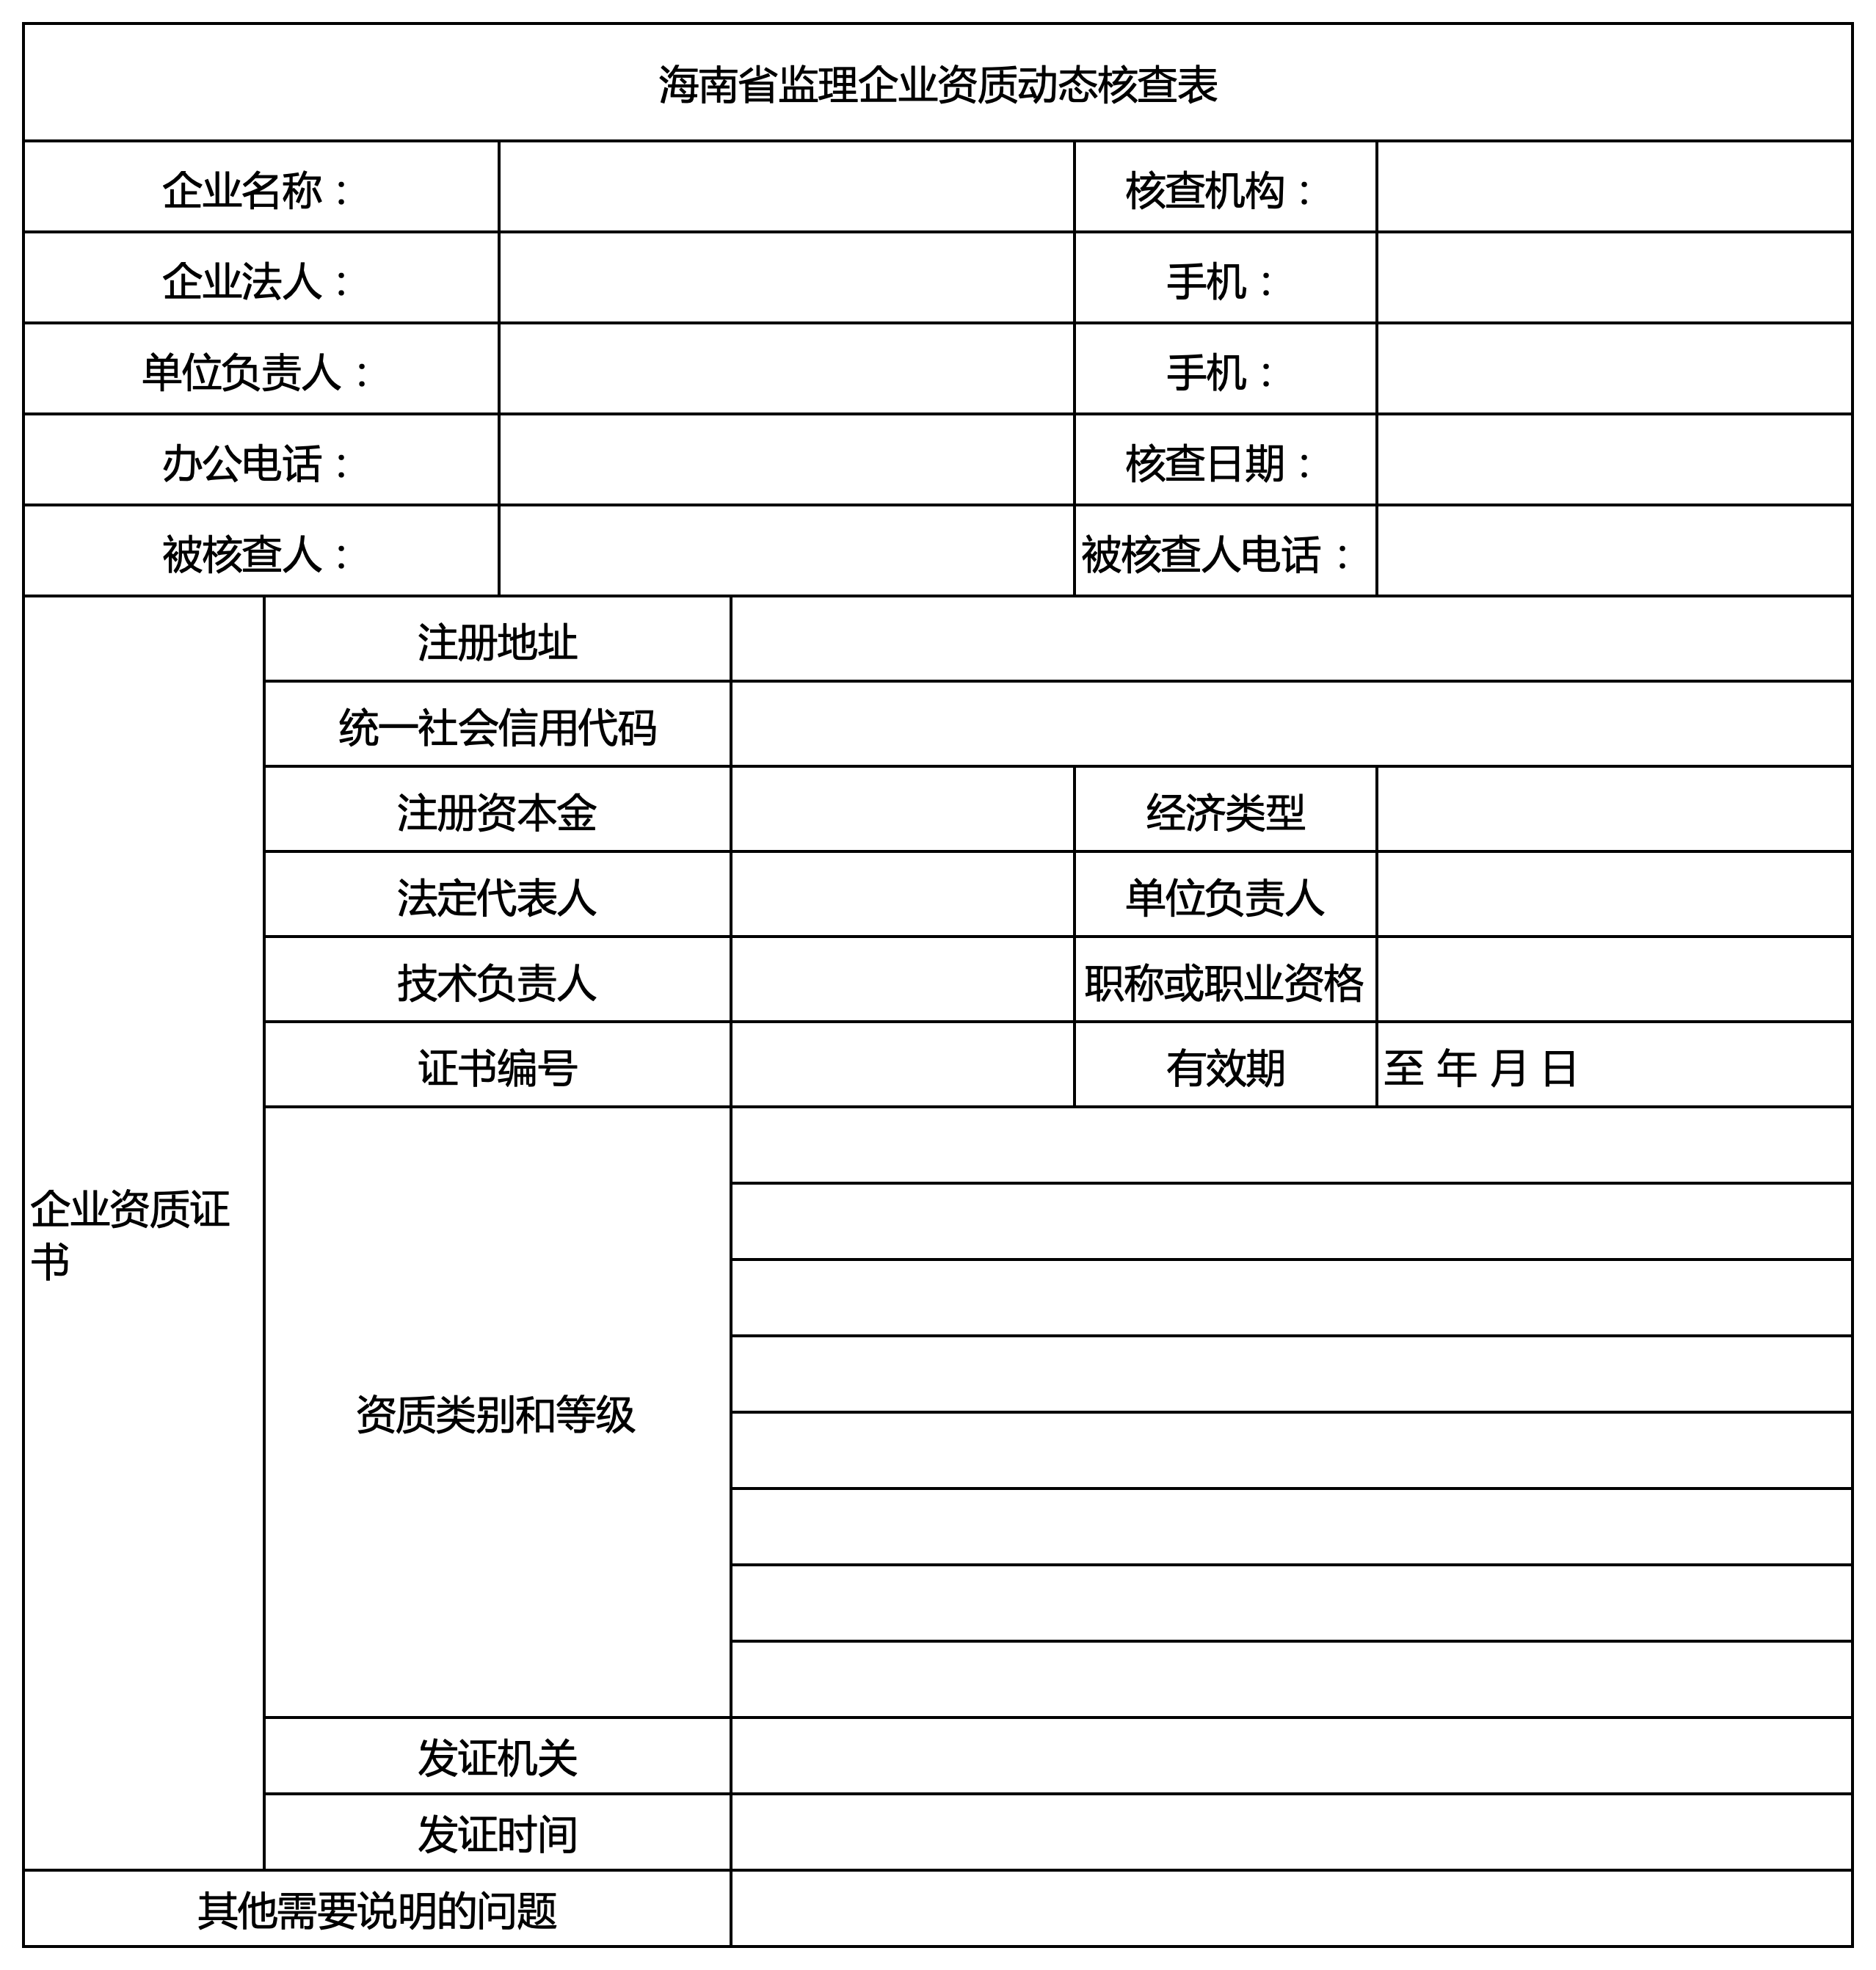 海南省建筑业企业资质动态核查表2.png